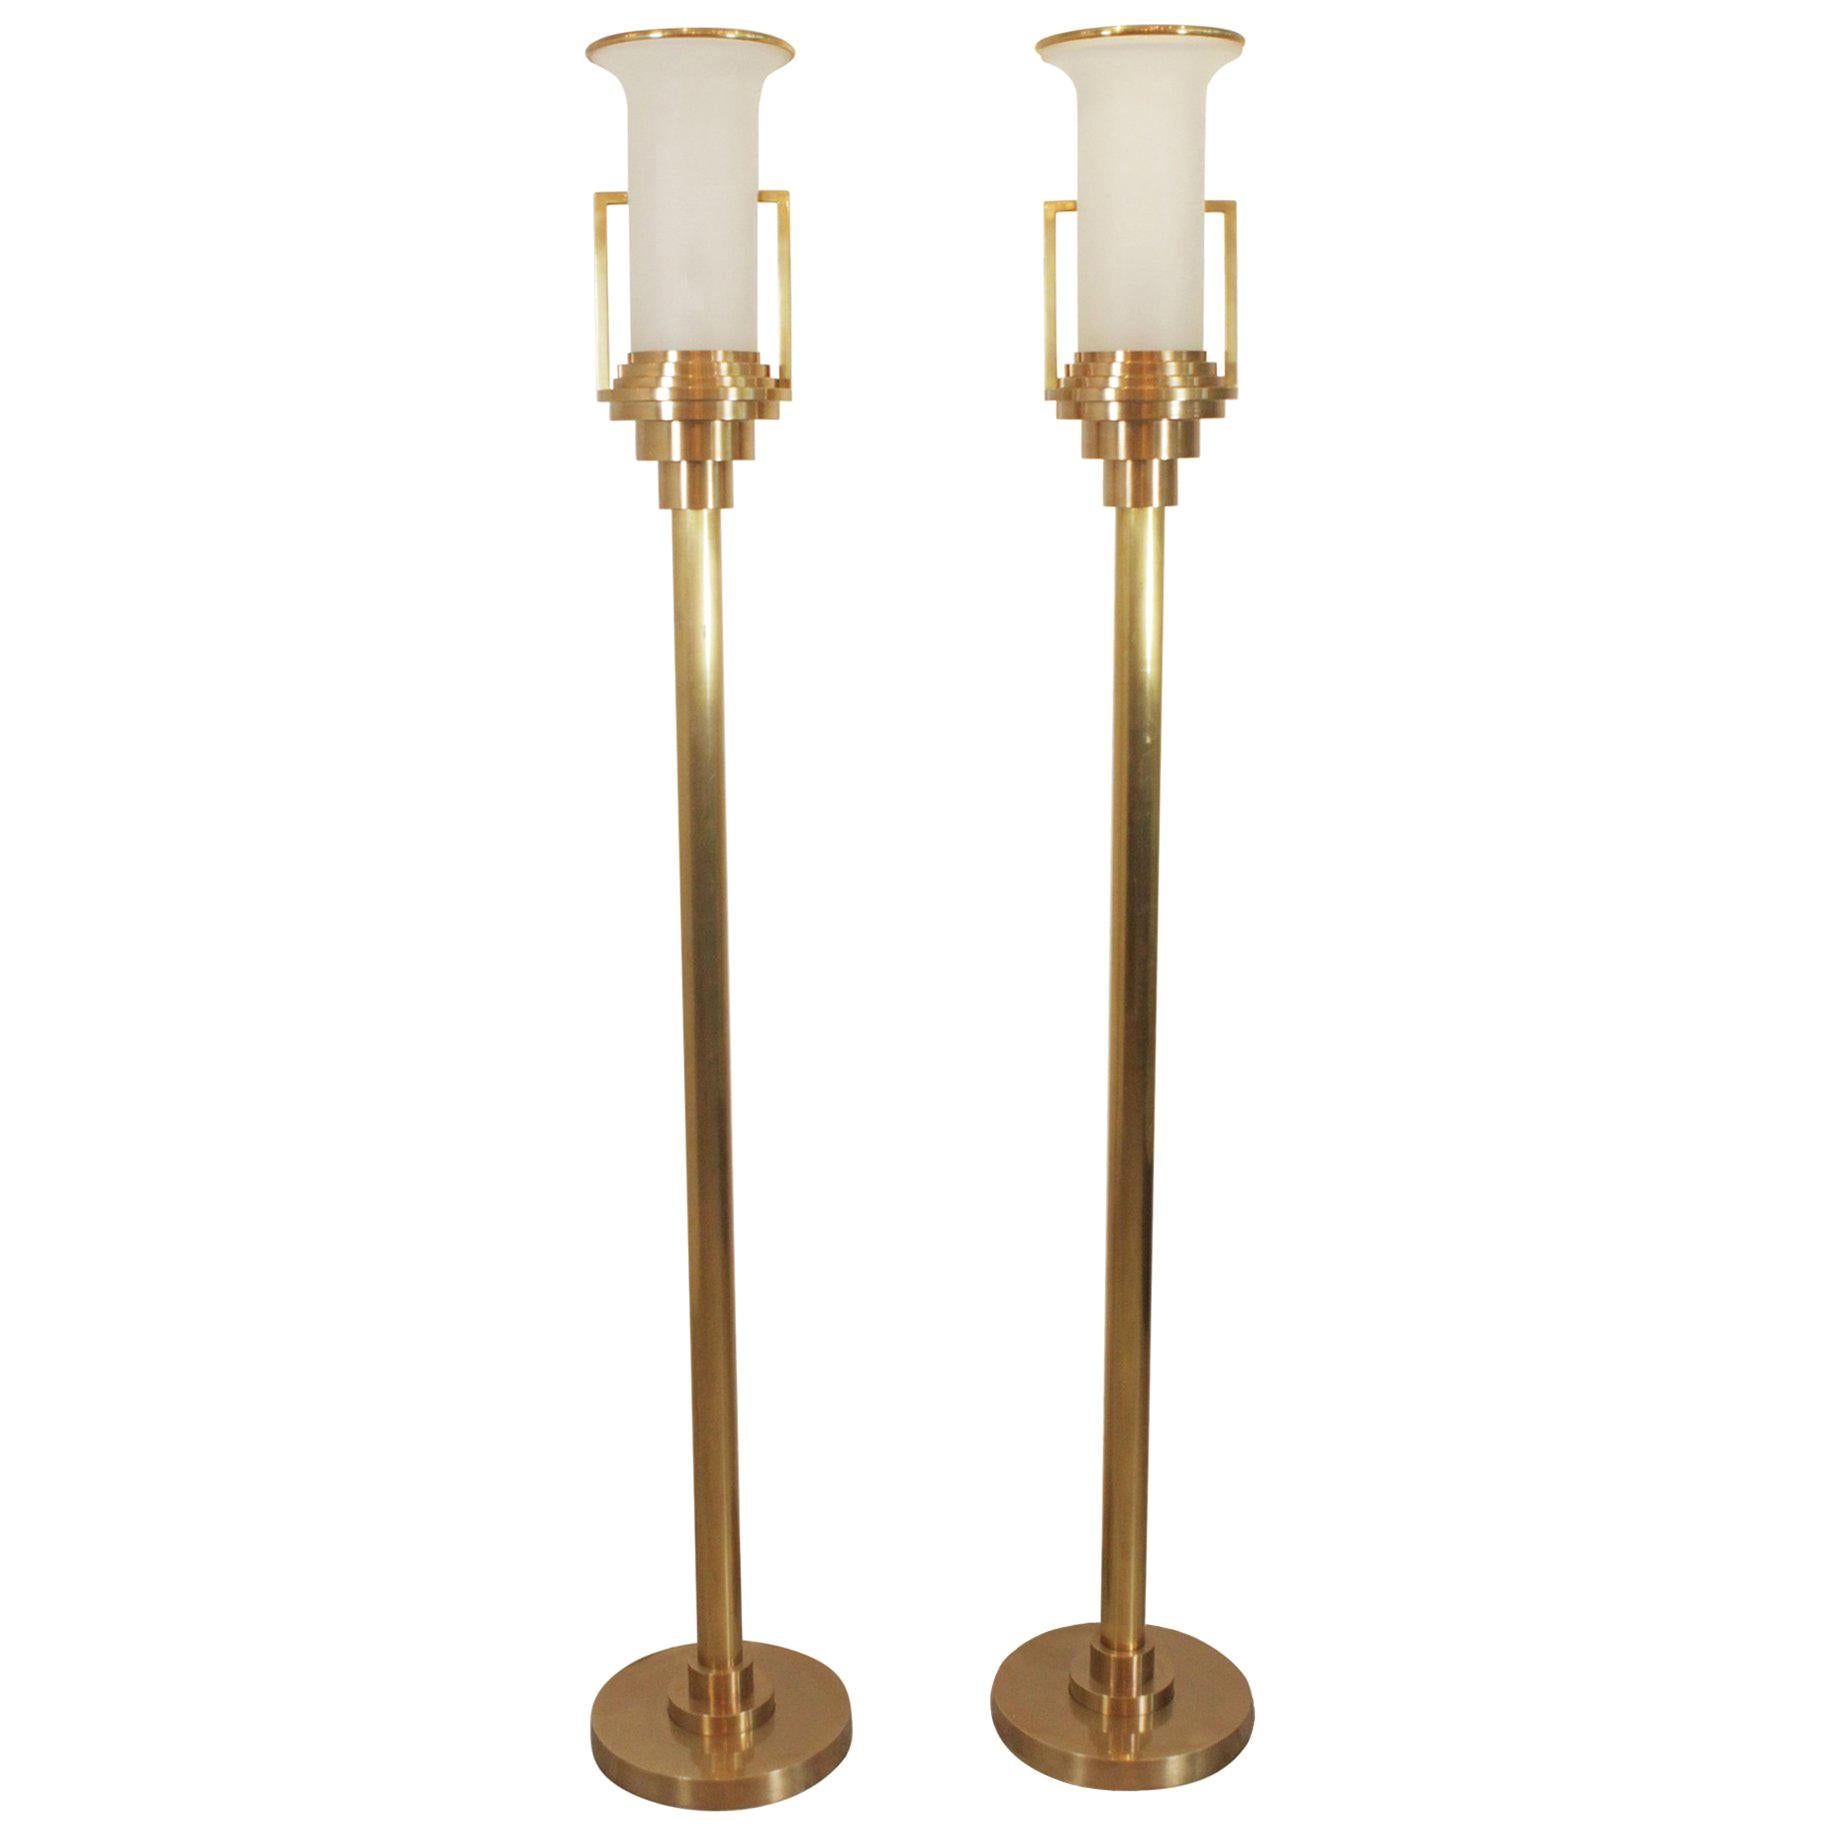 Pair of Modern Brass Torchere Floor Lamps